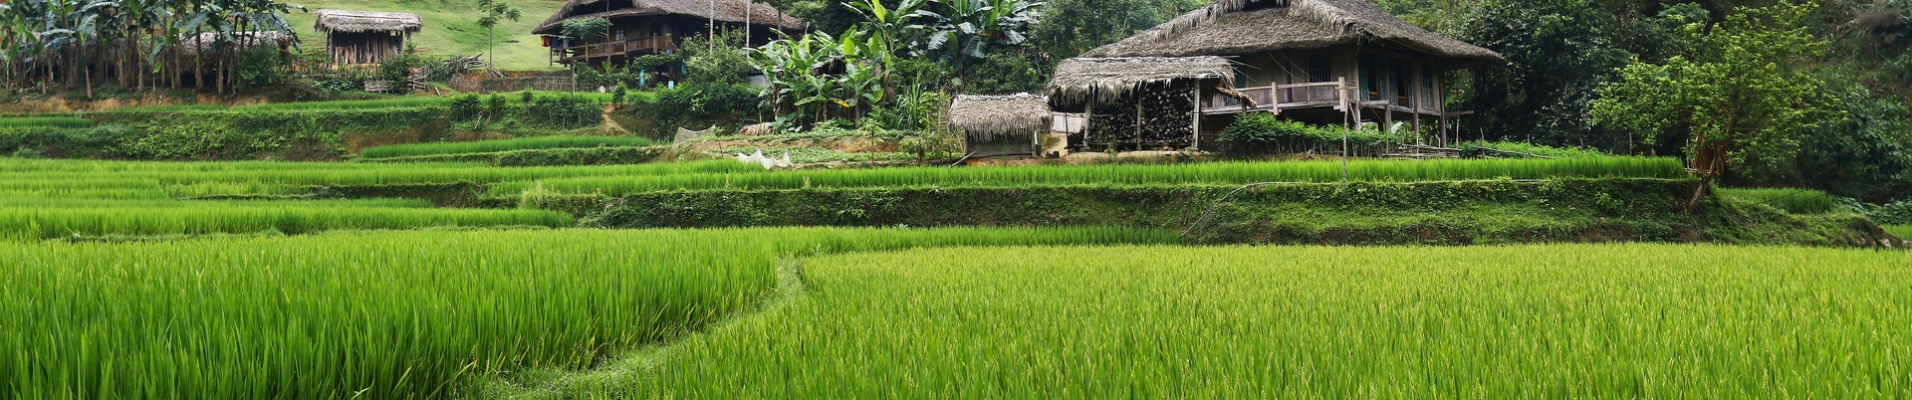 riziere cambodge